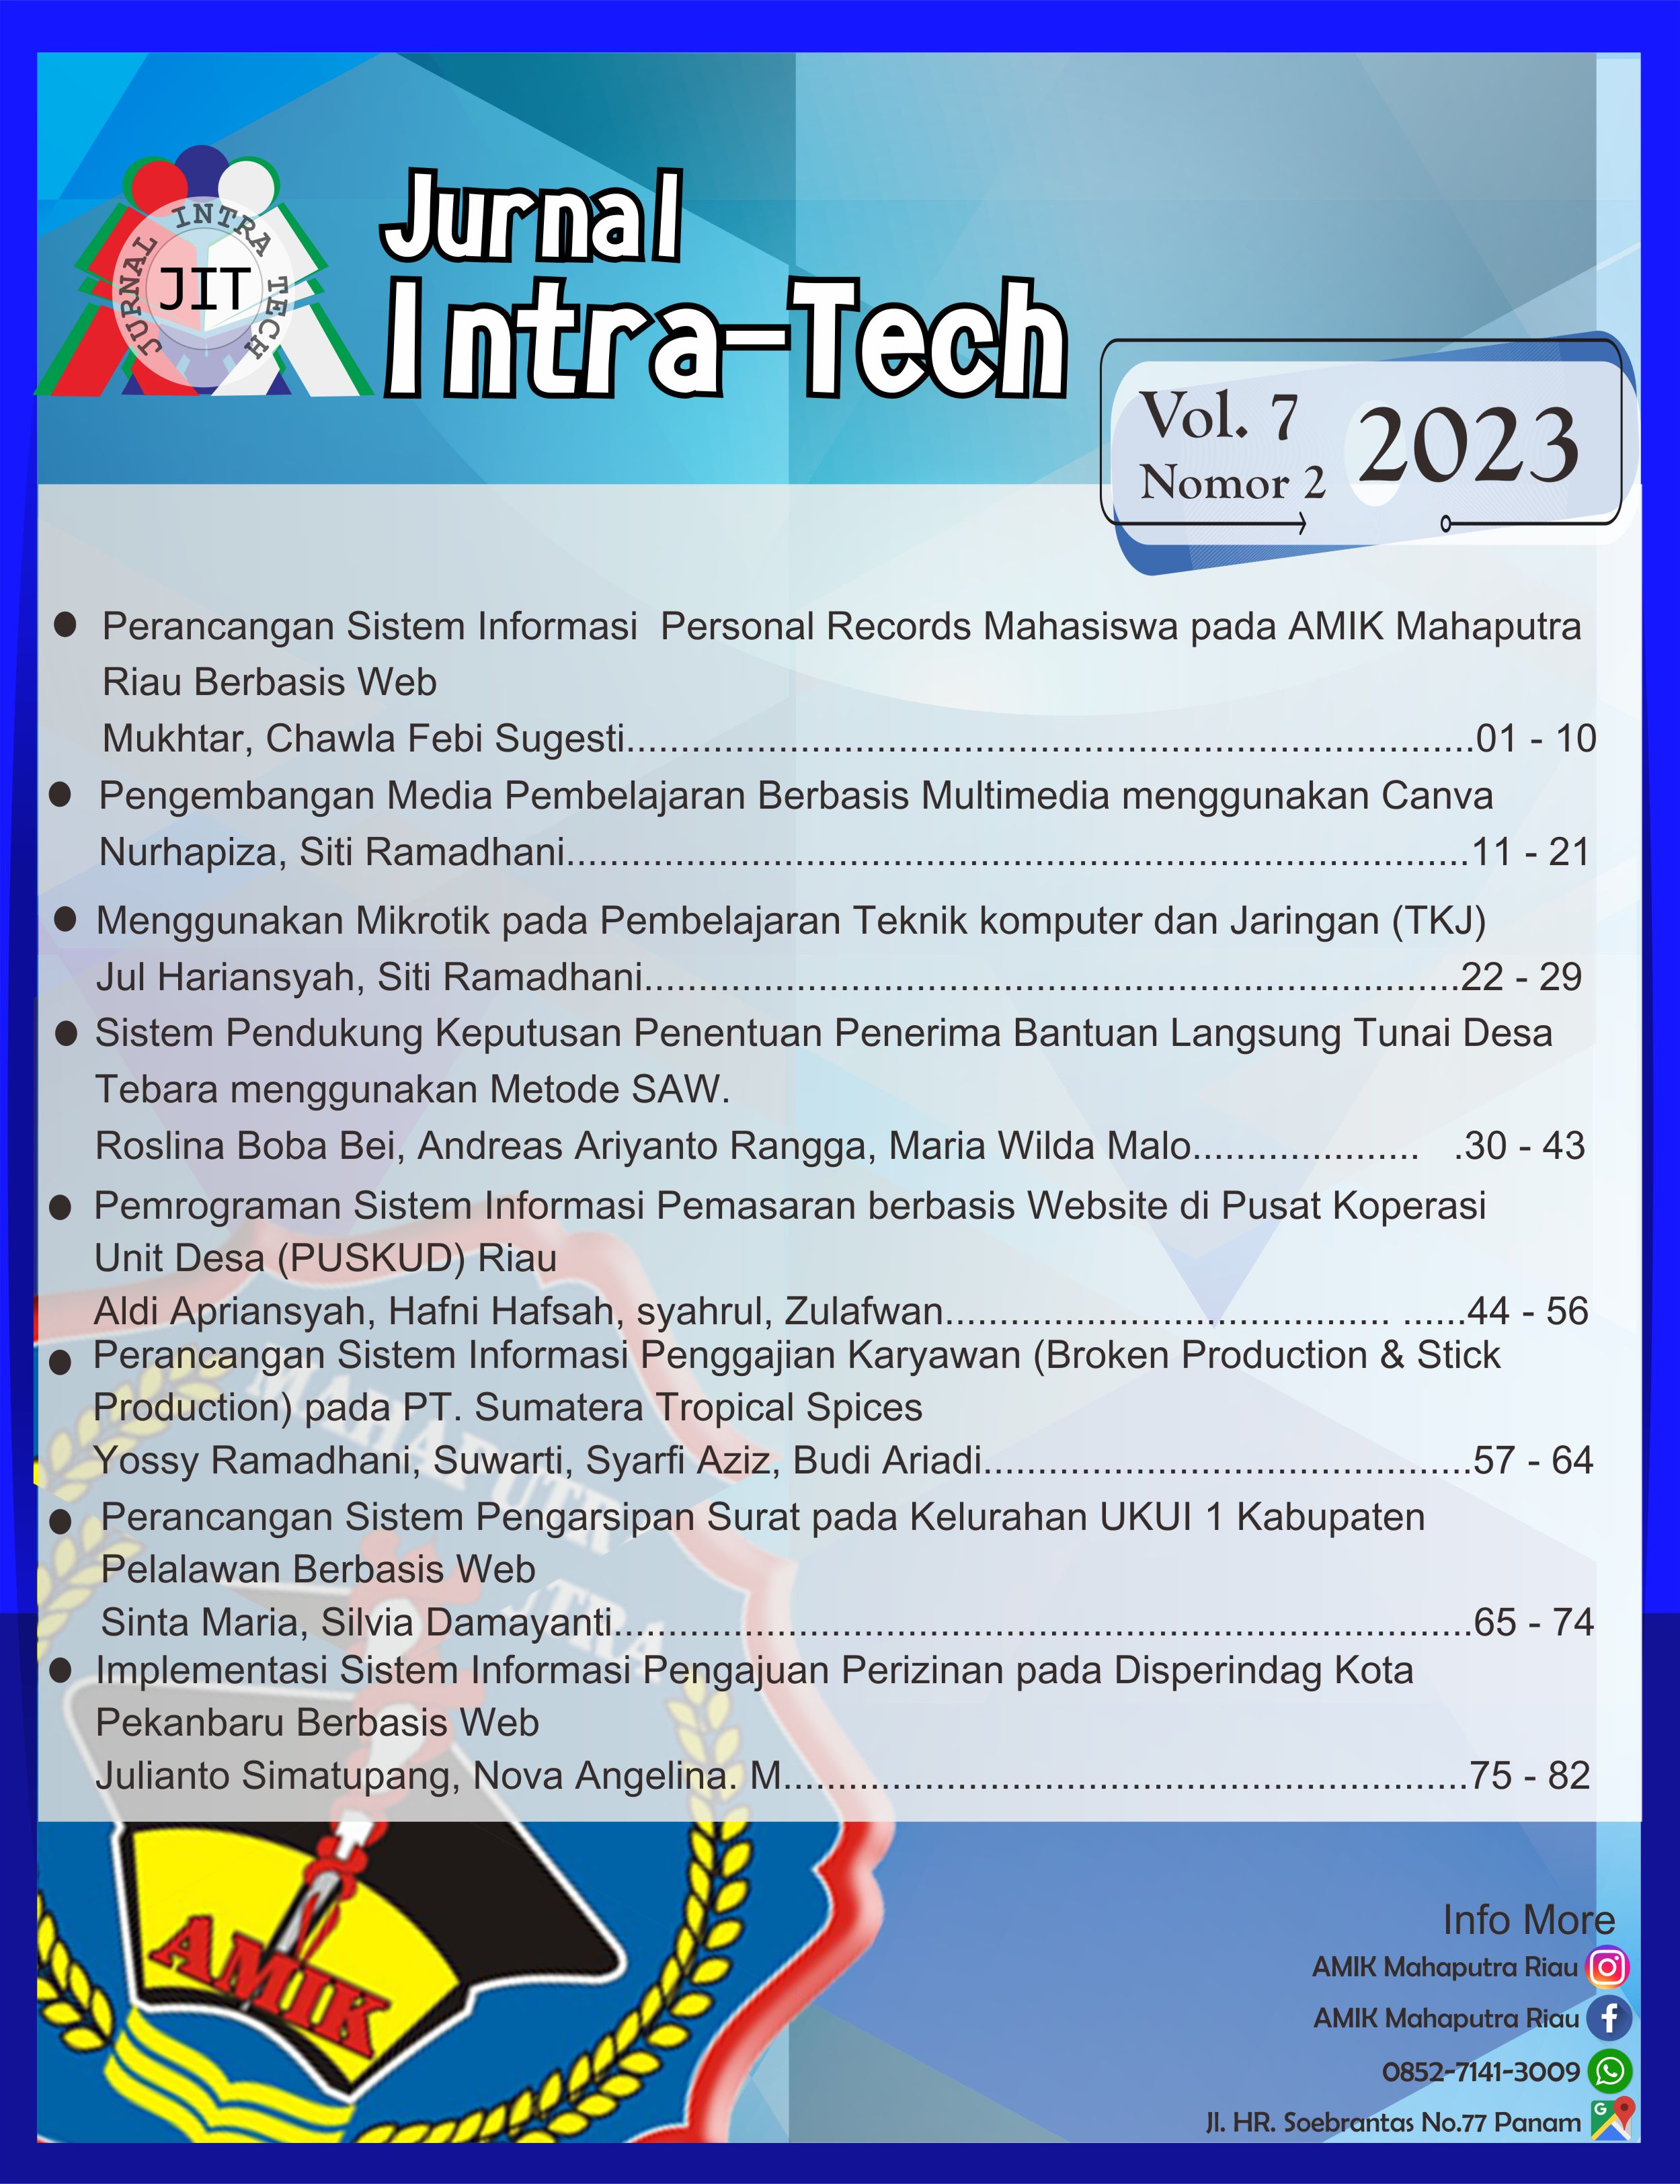 					Lihat Vol 7 No 2 (2023): Intra-Tech
				